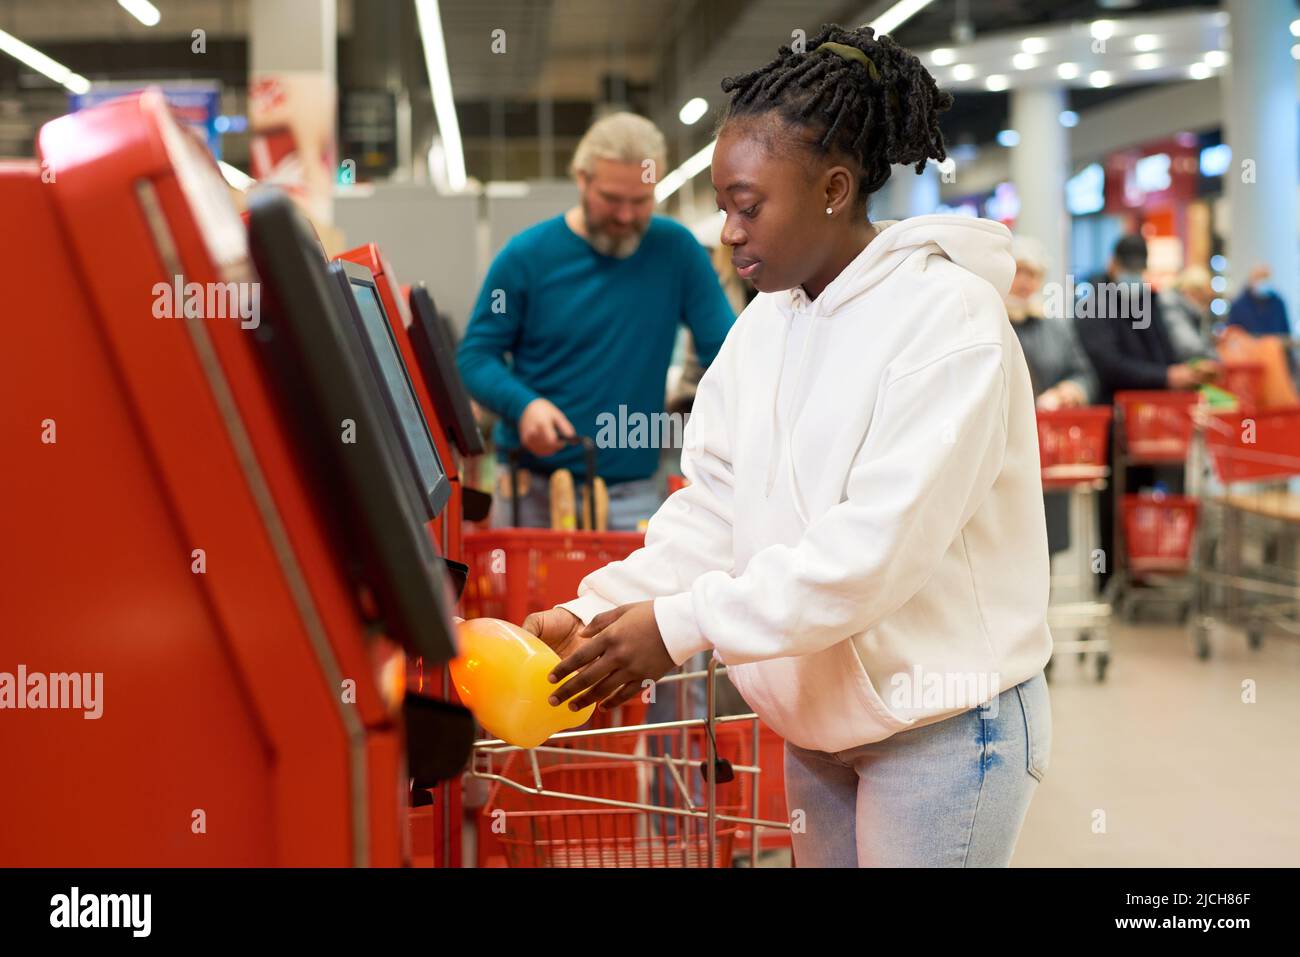 Junge Verbraucherinnen scannen eine Flasche Saft, während sie das Self-Service-Terminal gegen reife männliche Kunden im modernen Supermarkt nutzen Stockfoto